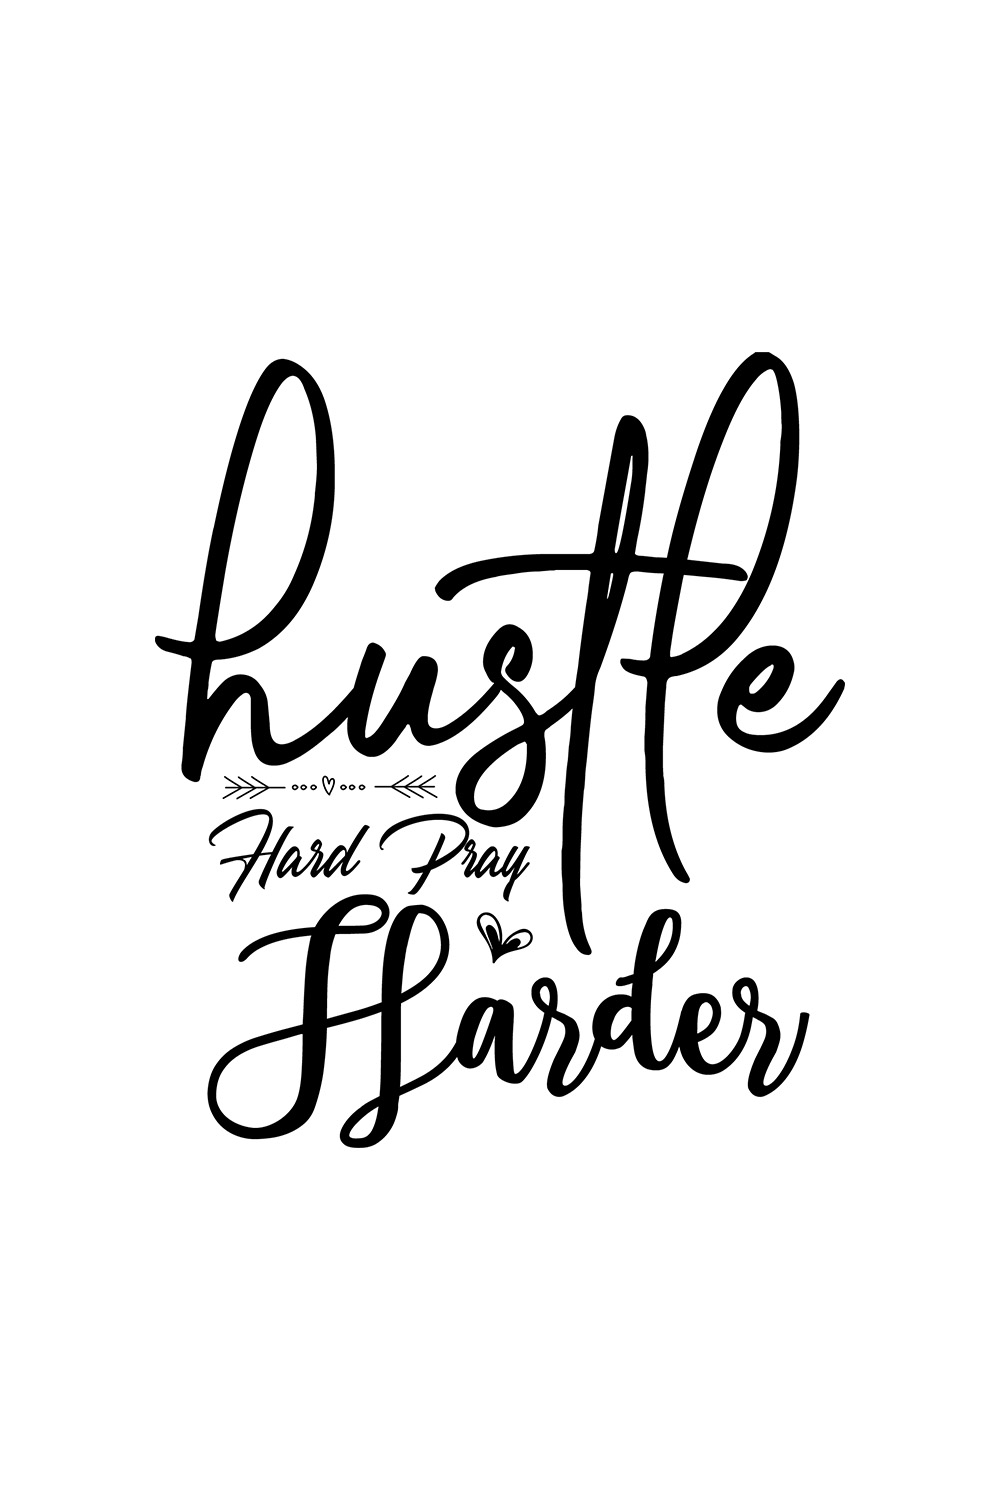 Image with wonderful black lettering for Hustle Hard Pray Harder prints.